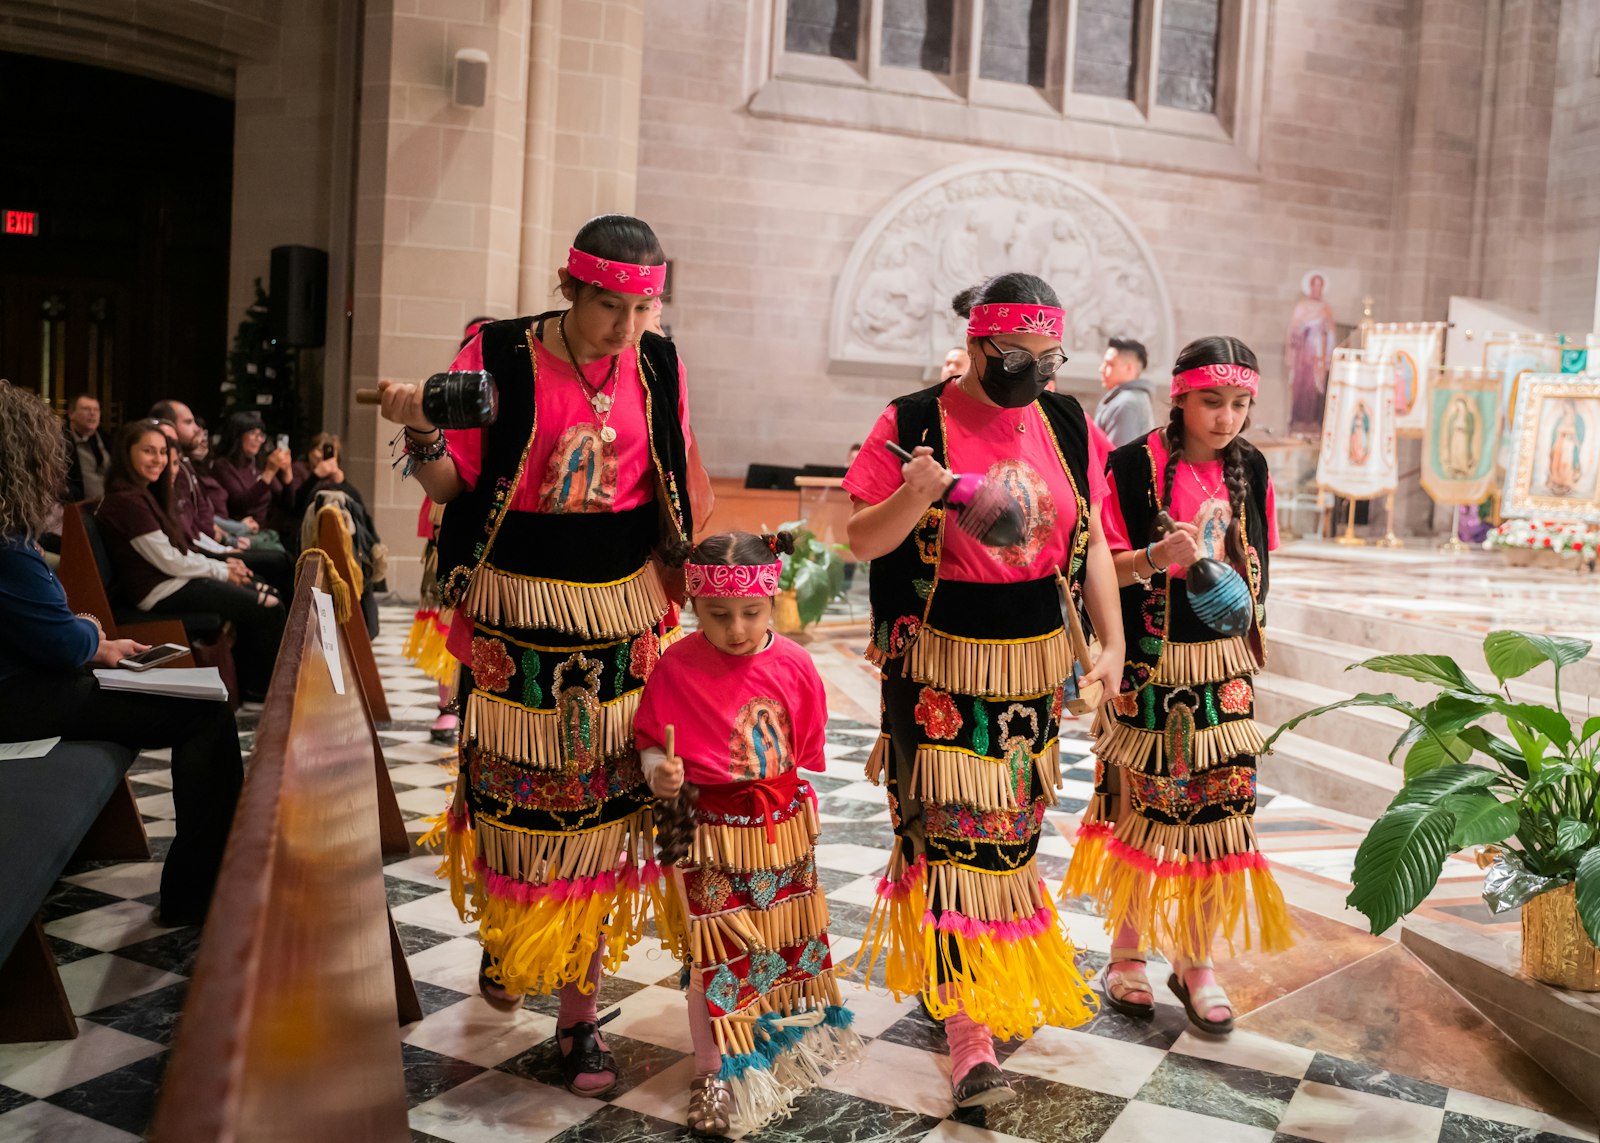 La conexión entre el baile y la espiritualidad resuena con la historia de la conversión de los nativos al catolicismo. La danza se convierte así en un puente cultural que une el pasado indígena con la fe católica.